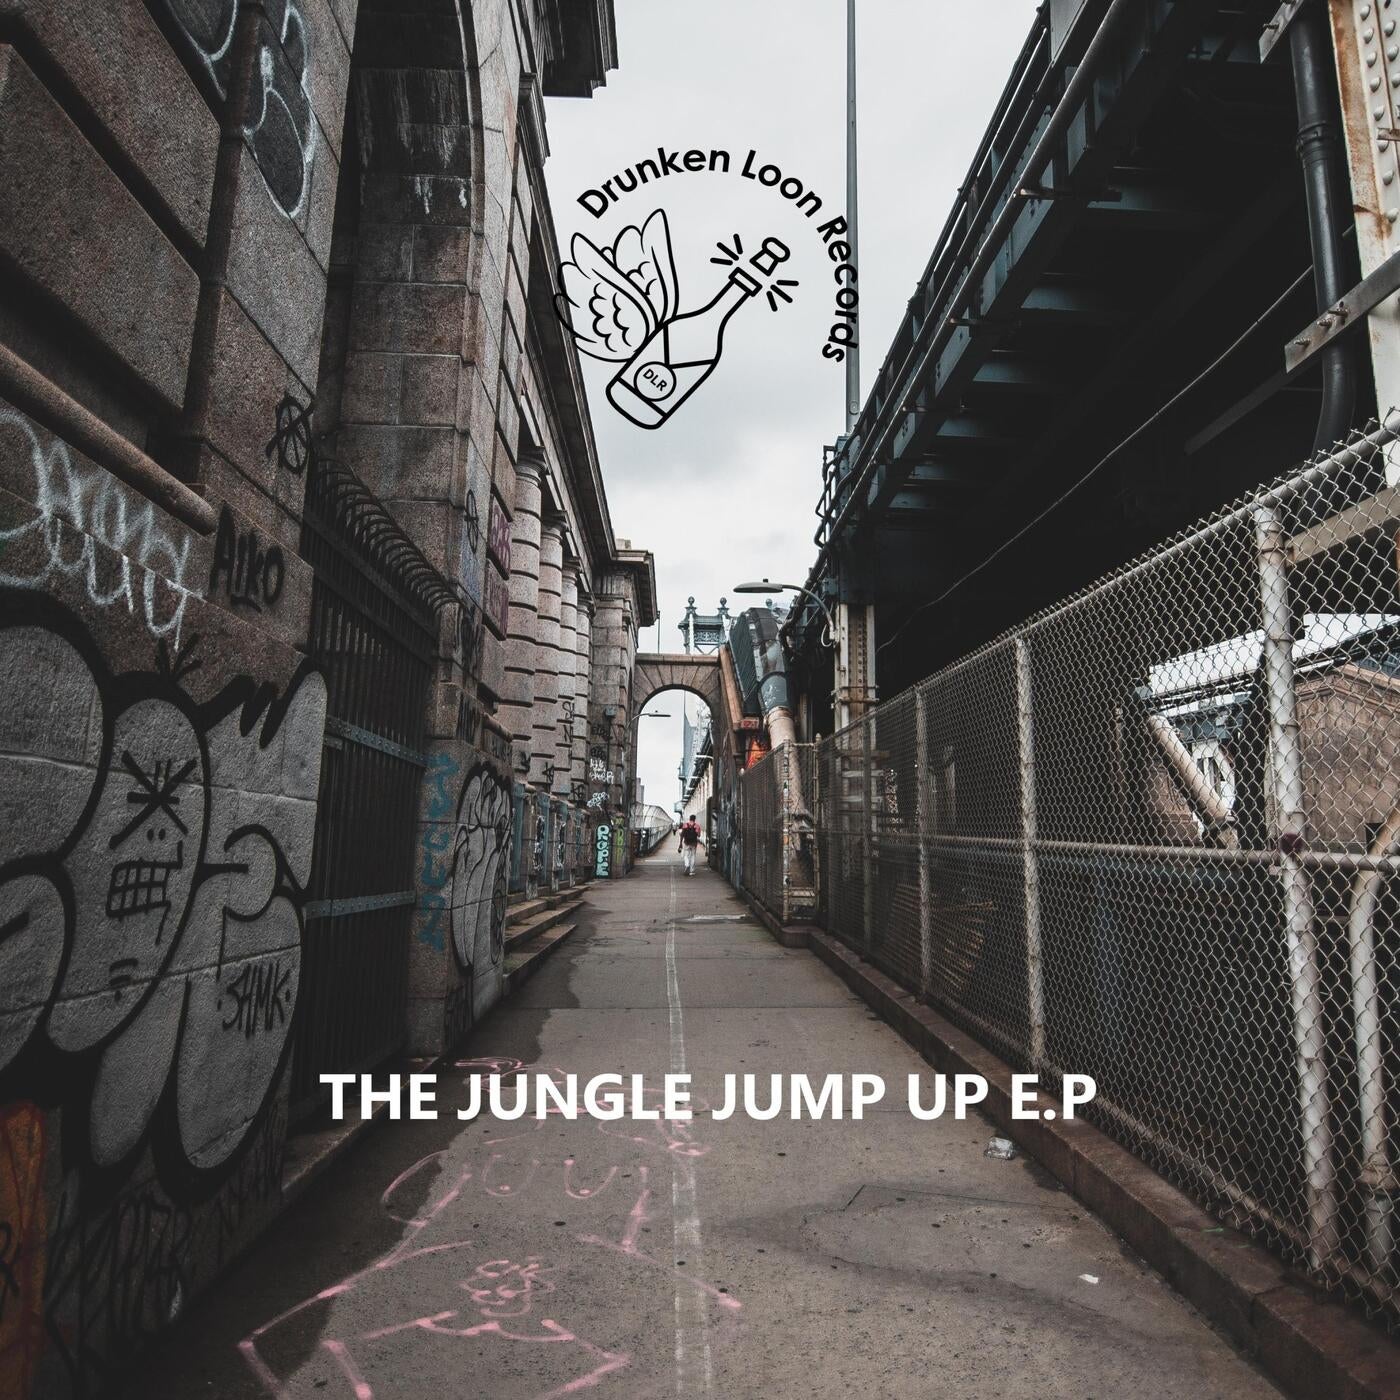 The Jungle Jump Up E.P